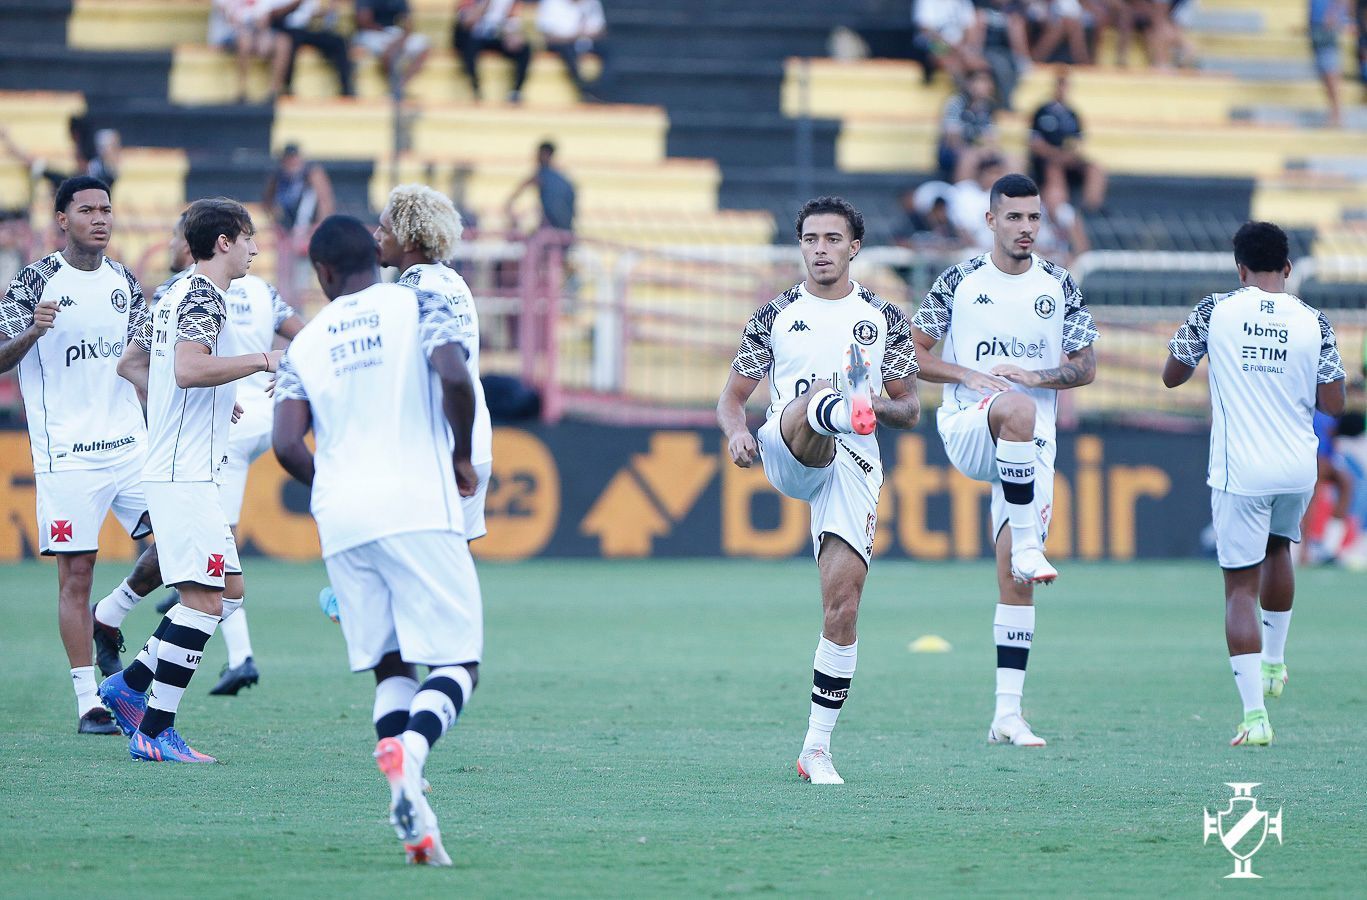 Vasco vence o Audax por 1 a 0 e se classifica para as semifinais do Campeonato Carioca